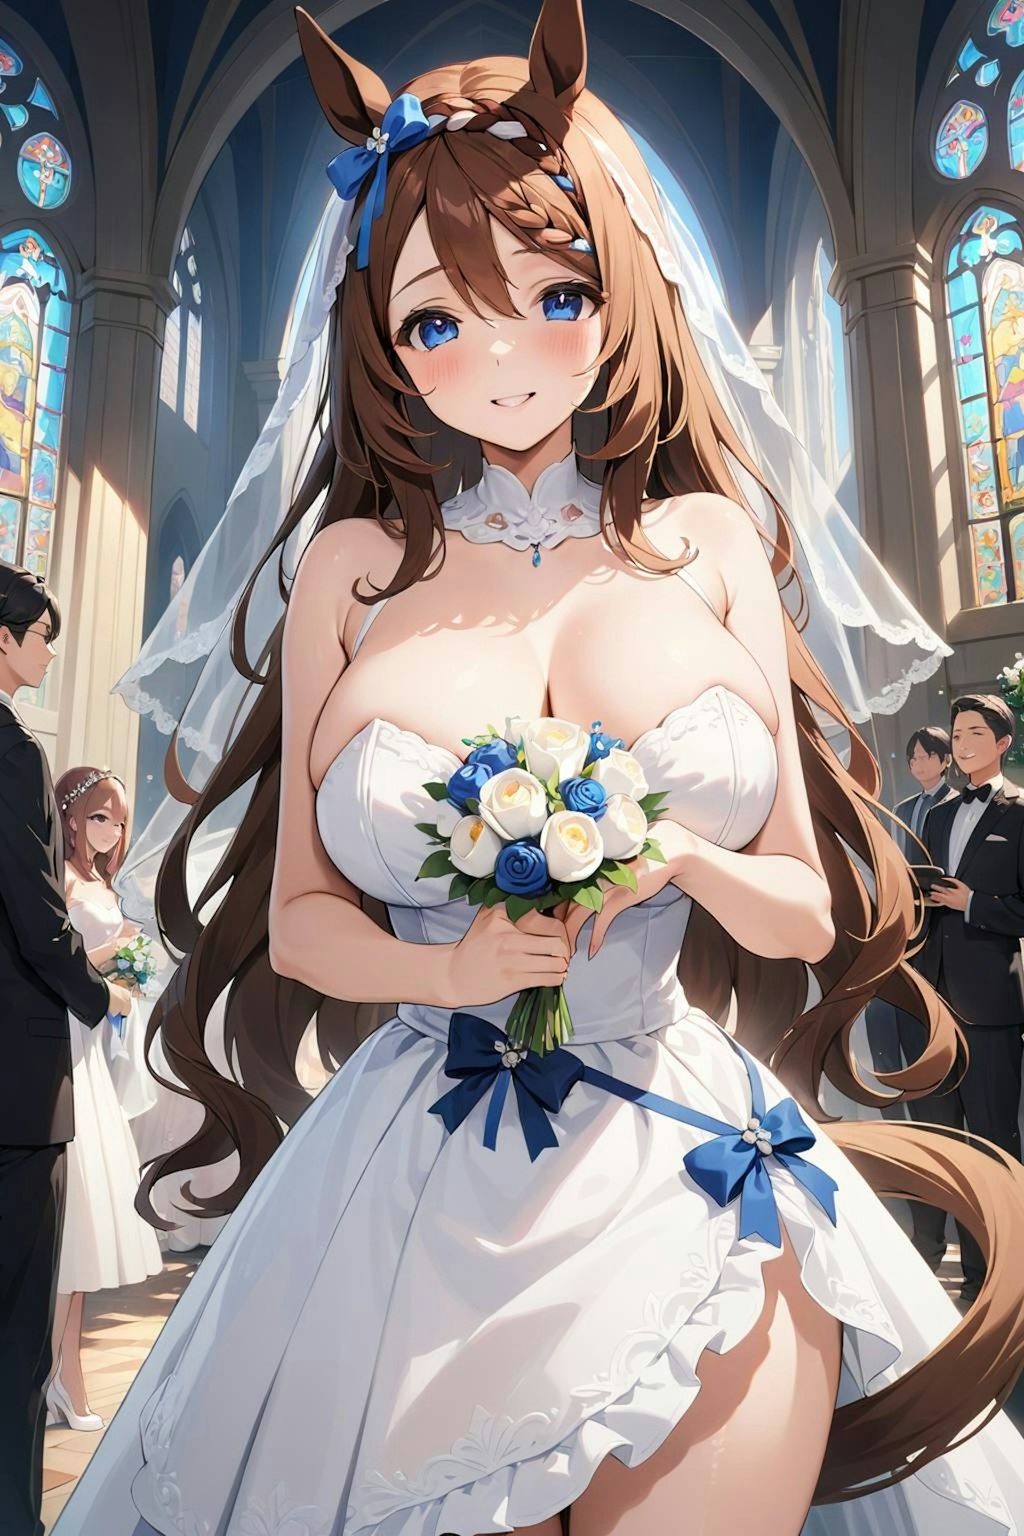 〜Umamusume Wedding Story Ⅱ 〜